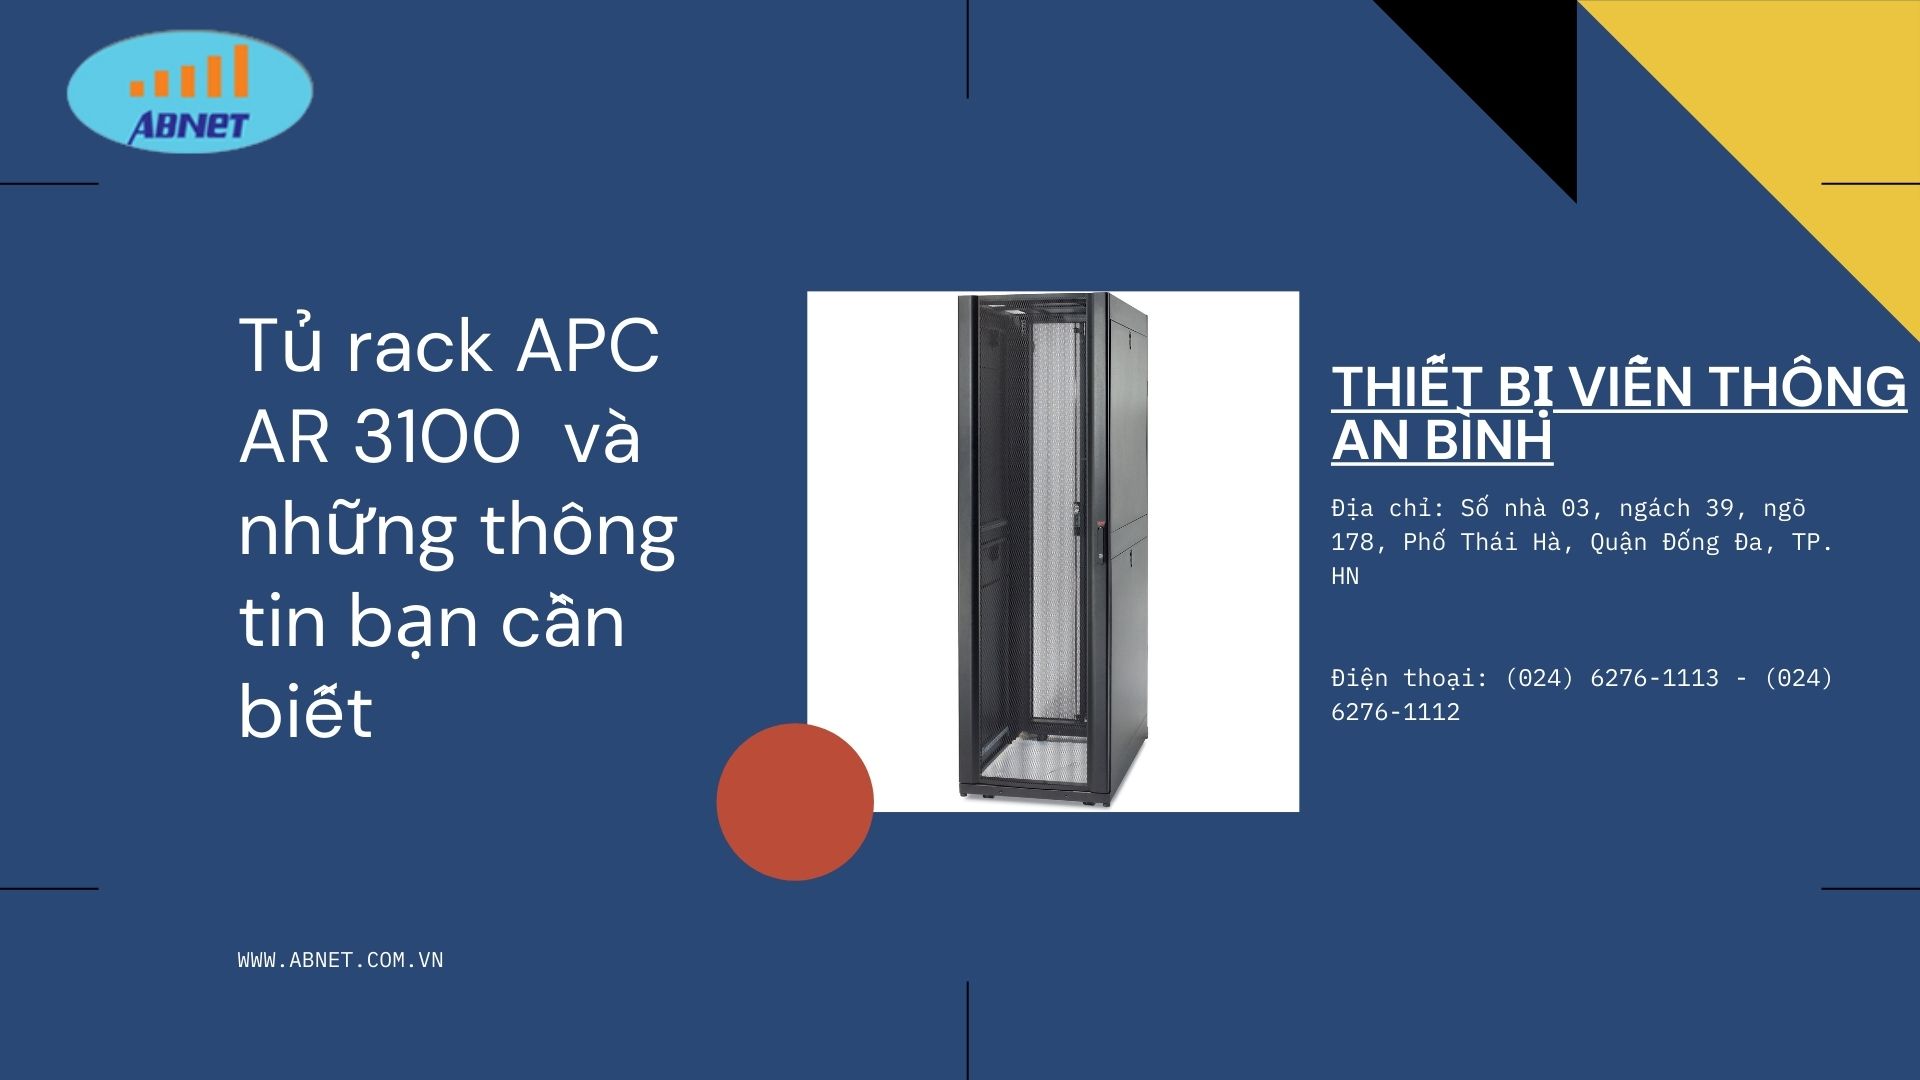 Tủ rack APC AR 3100  và những thông tin bạn cần biết